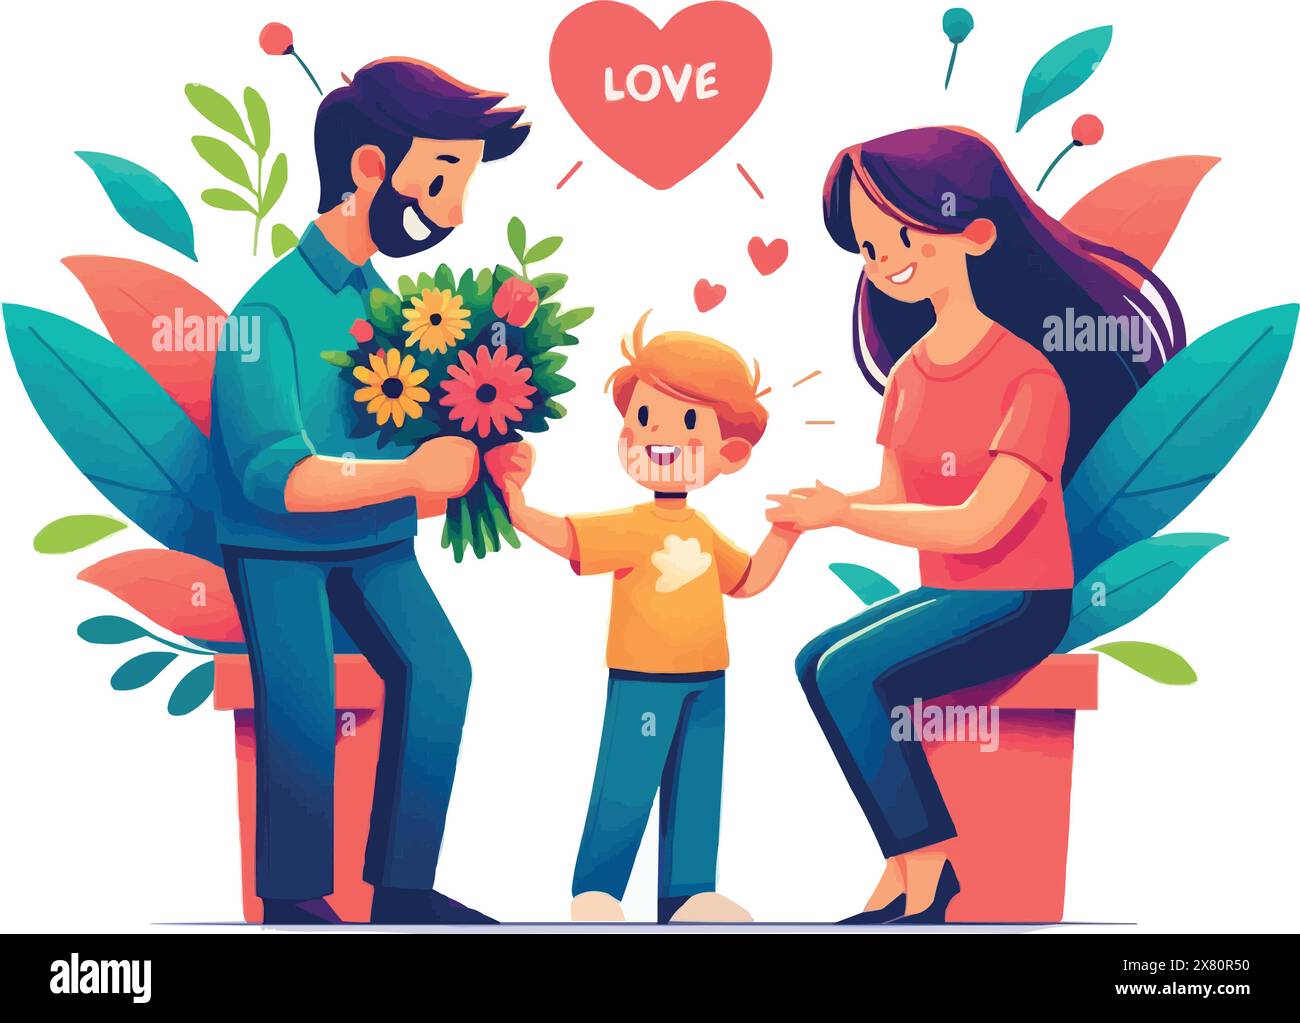 Am Tag der Eltern überreicht der Ehemann seiner Frau einen großen Blumenstrauß, und ihr Sohn steht neben ihm. Stock Vektor